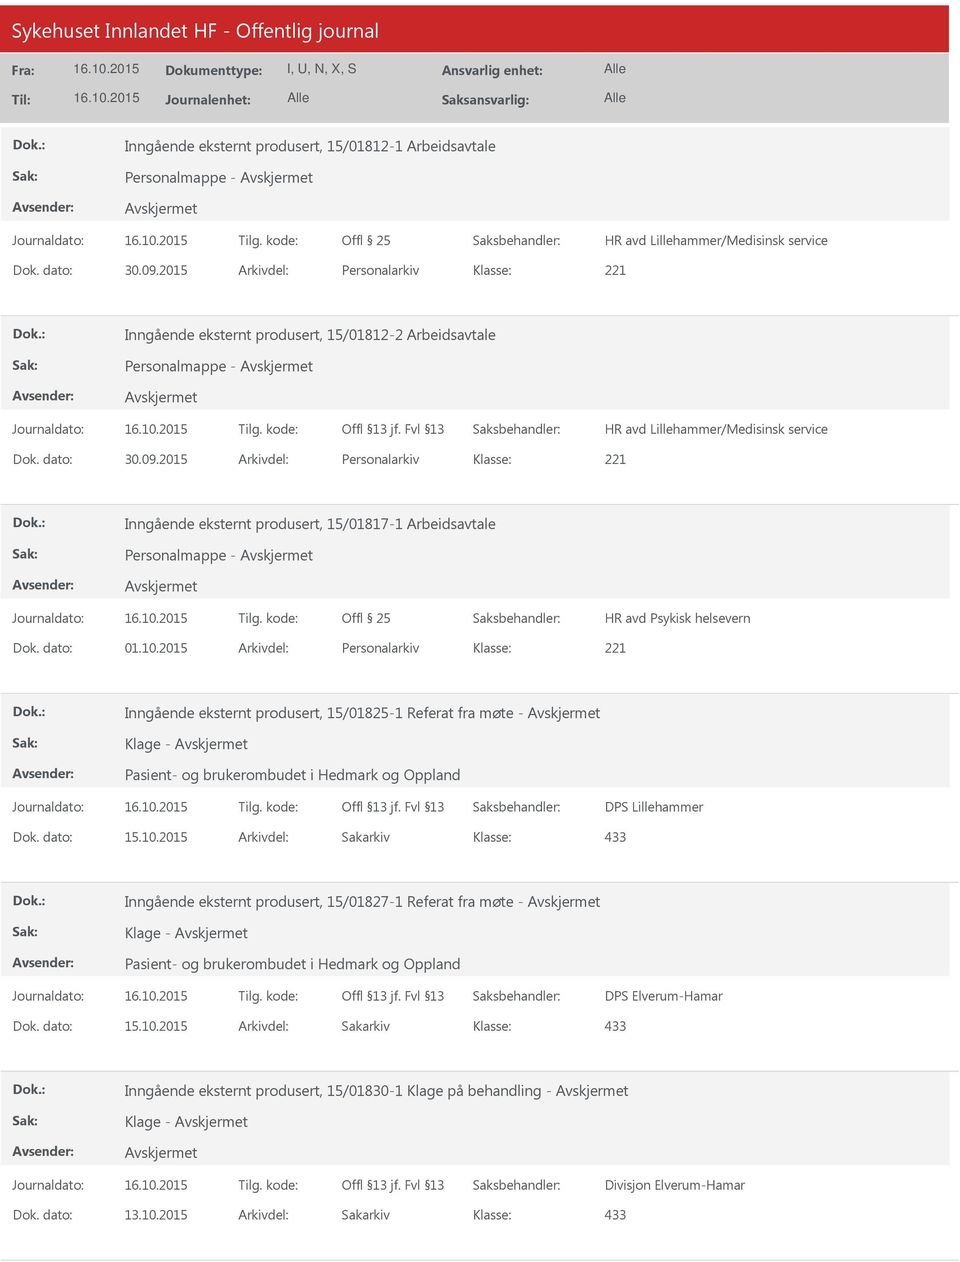 2015 Arkivdel: Personalarkiv Inngående eksternt produsert, 15/01817-1 Arbeidsavtale Personalmappe - HR avd Psykisk helsevern Dok. dato: 01.10.